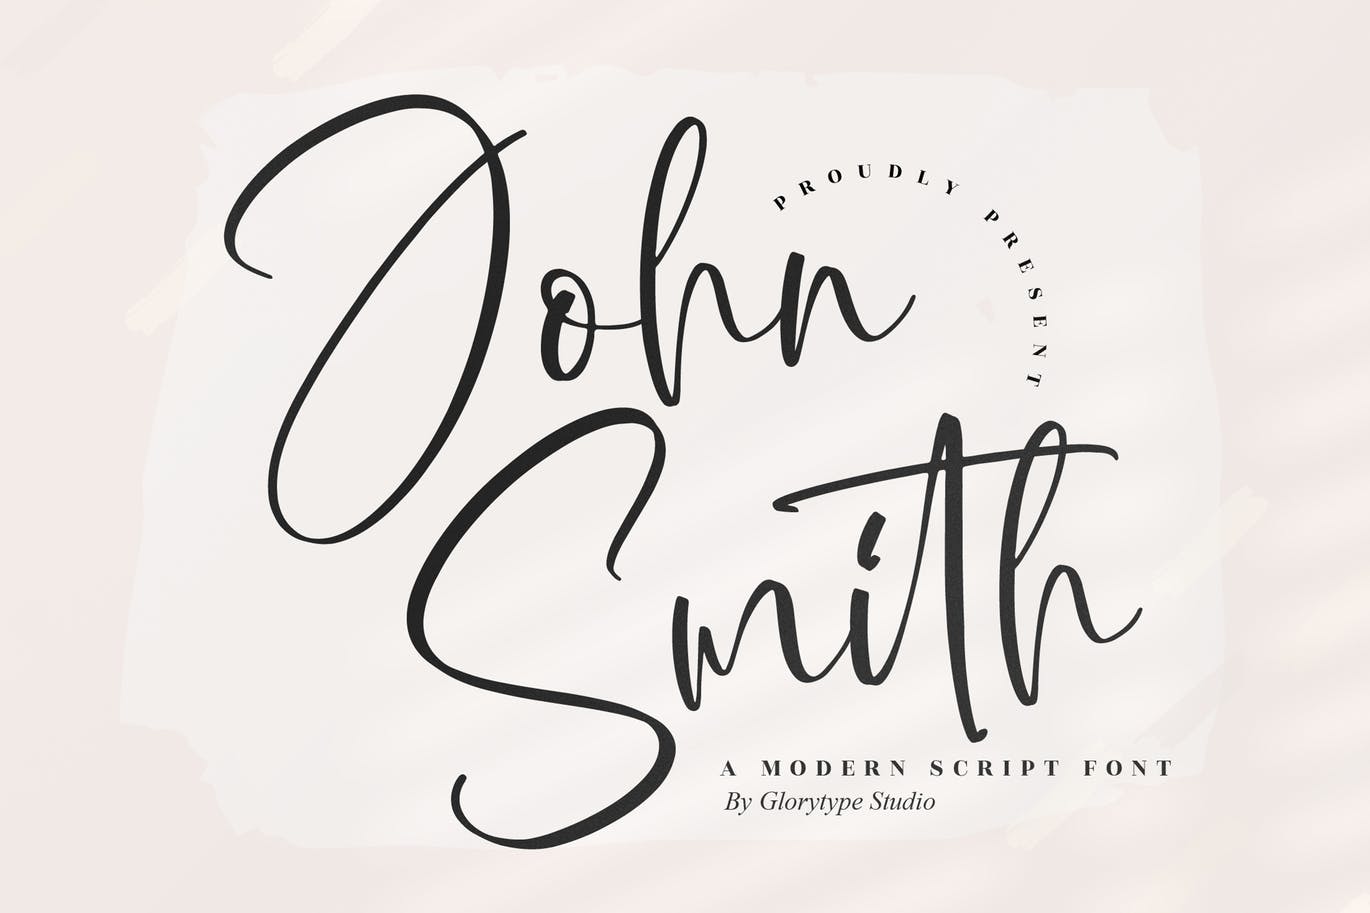 个性书法手写字体 John Smith Script Font 设计素材 第1张